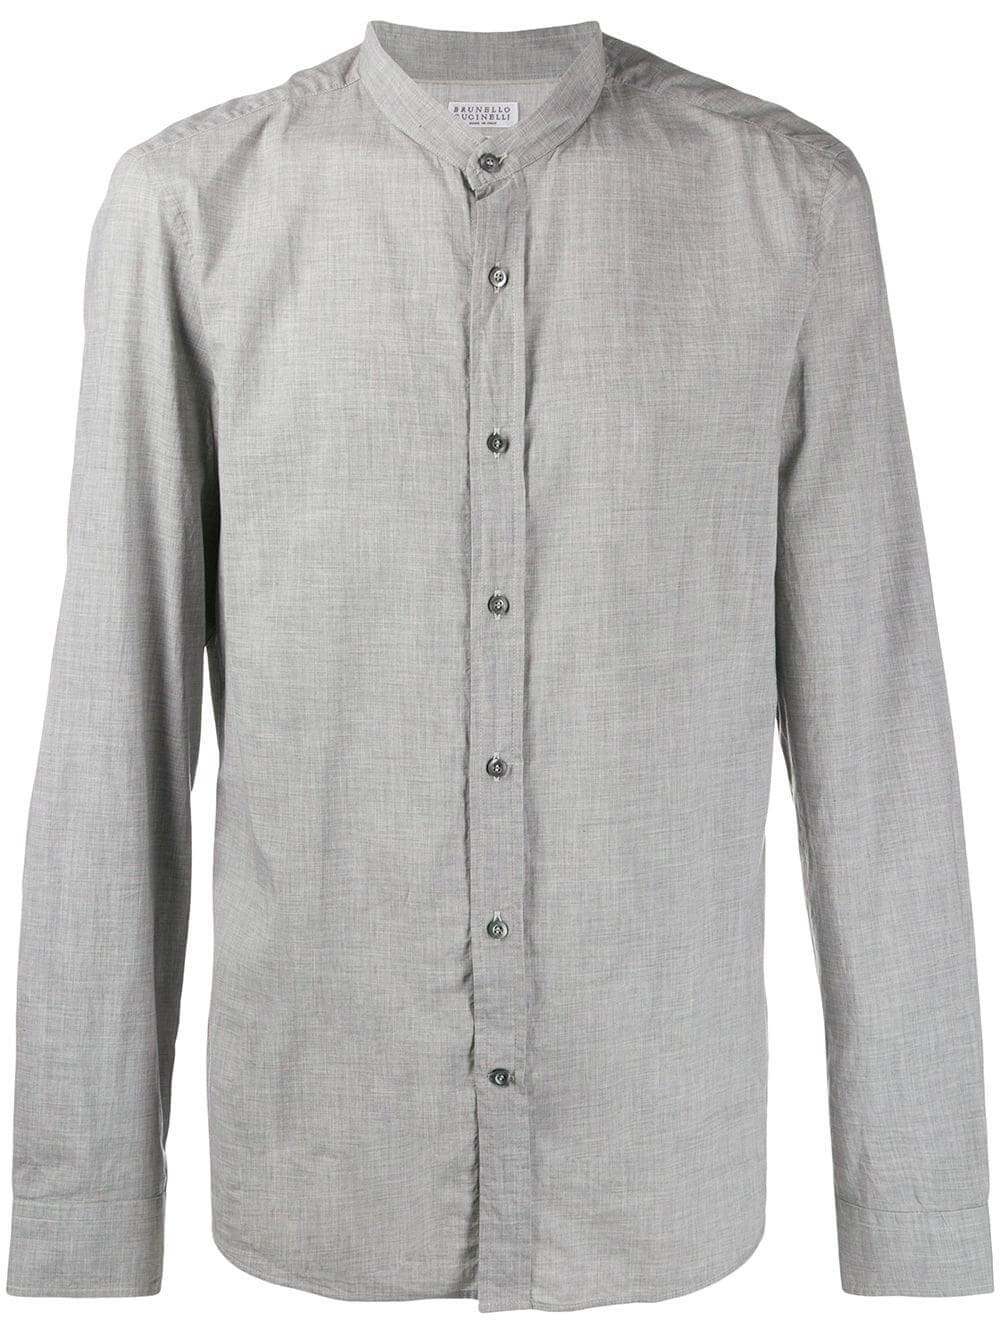 グレーシャツ コーデ メンズ特集 都会的な品を備えた男の着こなし アイテムを紹介 メンズファッションメディア Esigmaroc